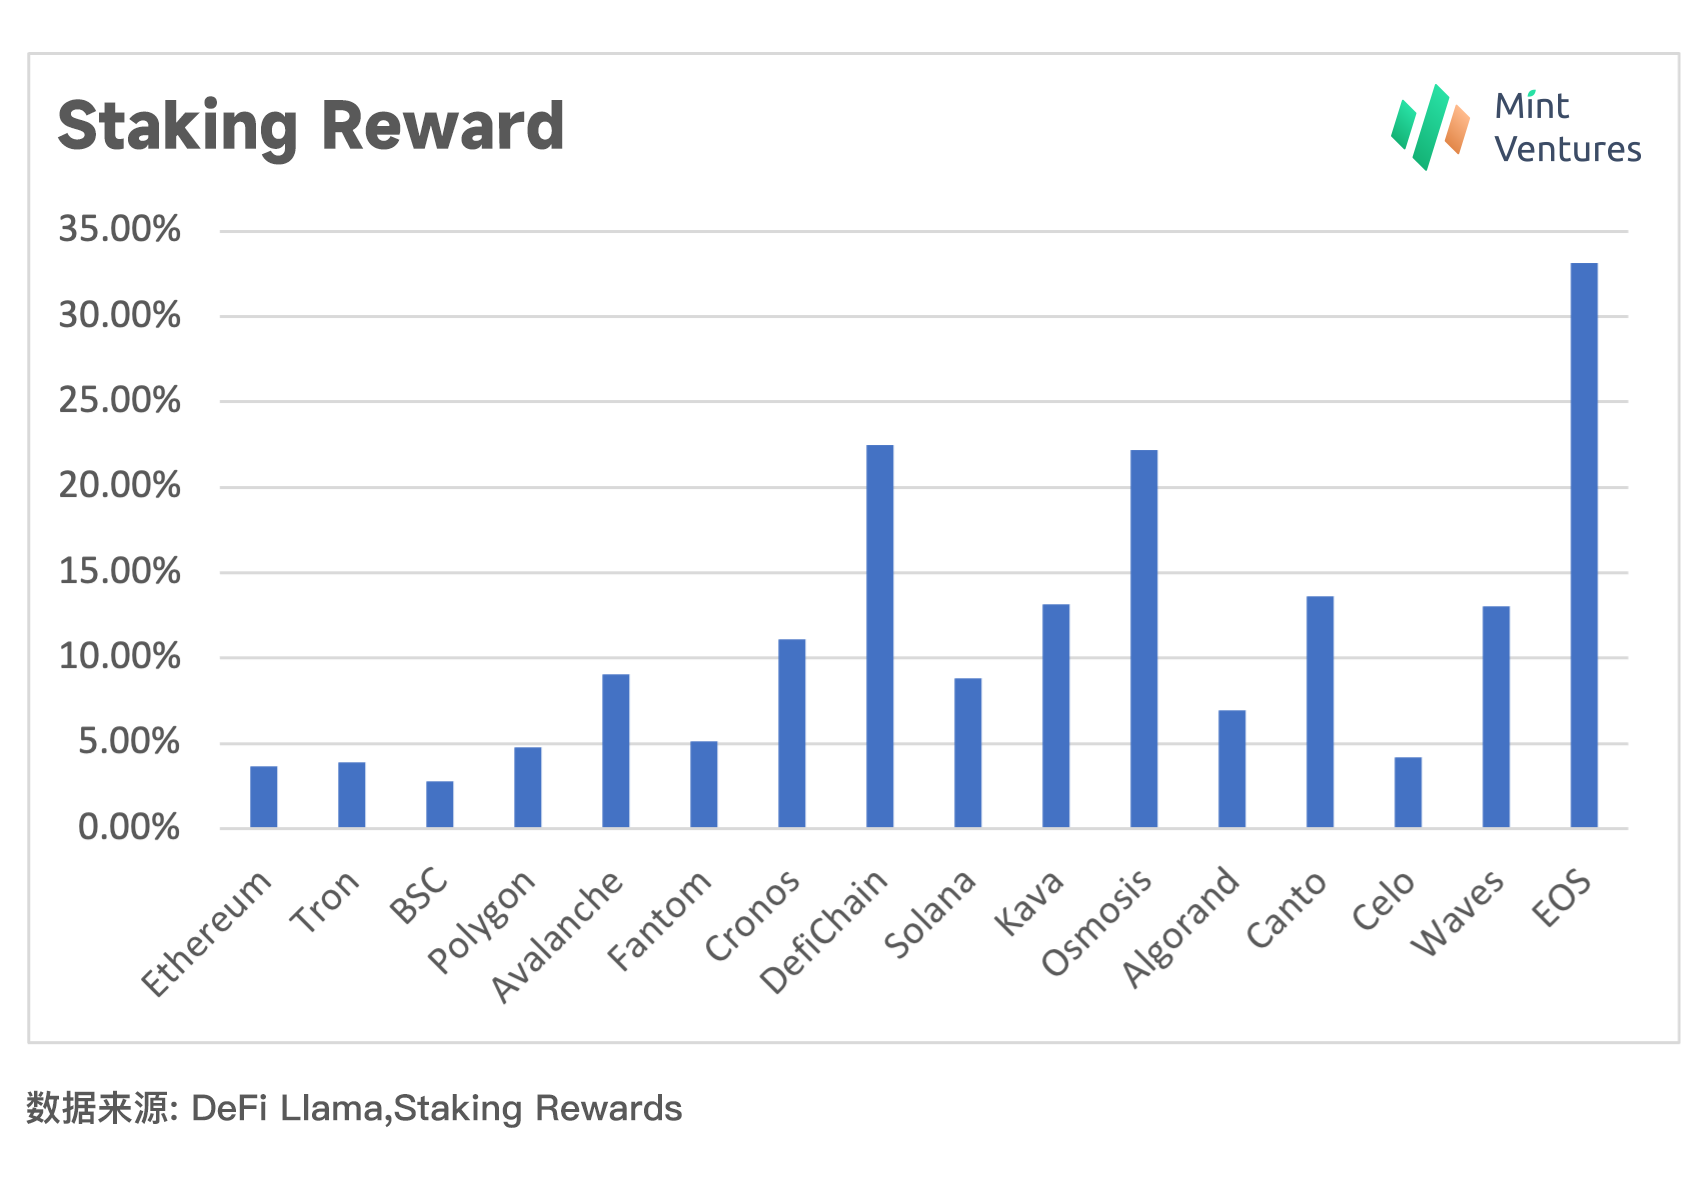 数据来源：DeFi Llama, Staking Rewards